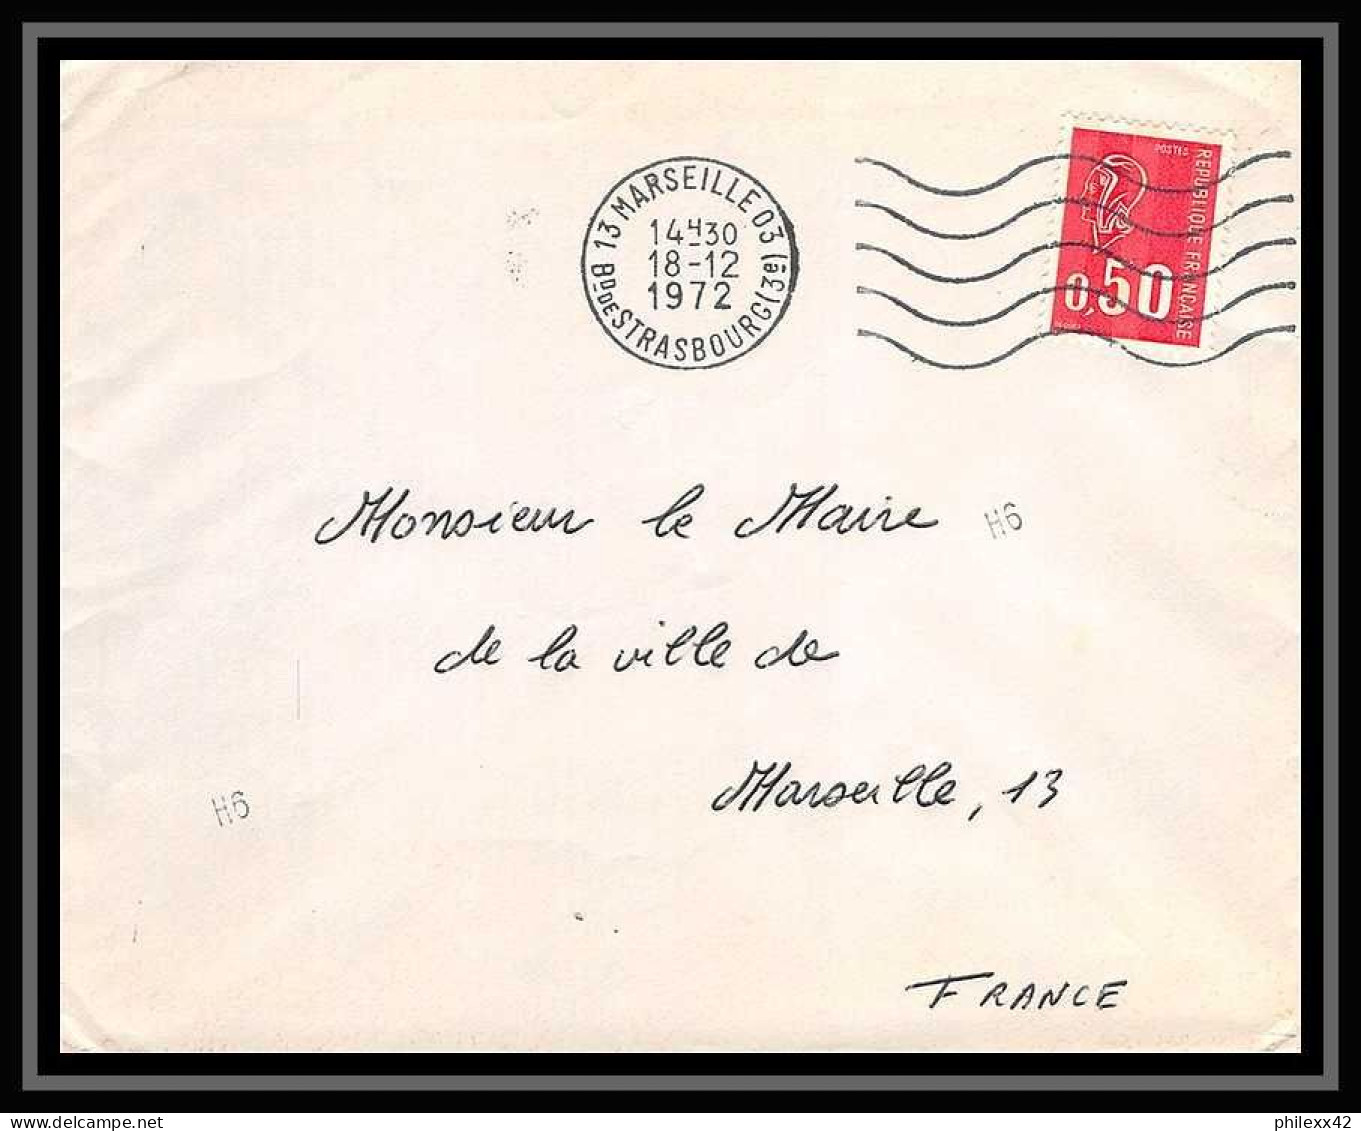 107976 lot de 12 lettres dont recommandé Bouches du rhone Marseille rue des trois mages